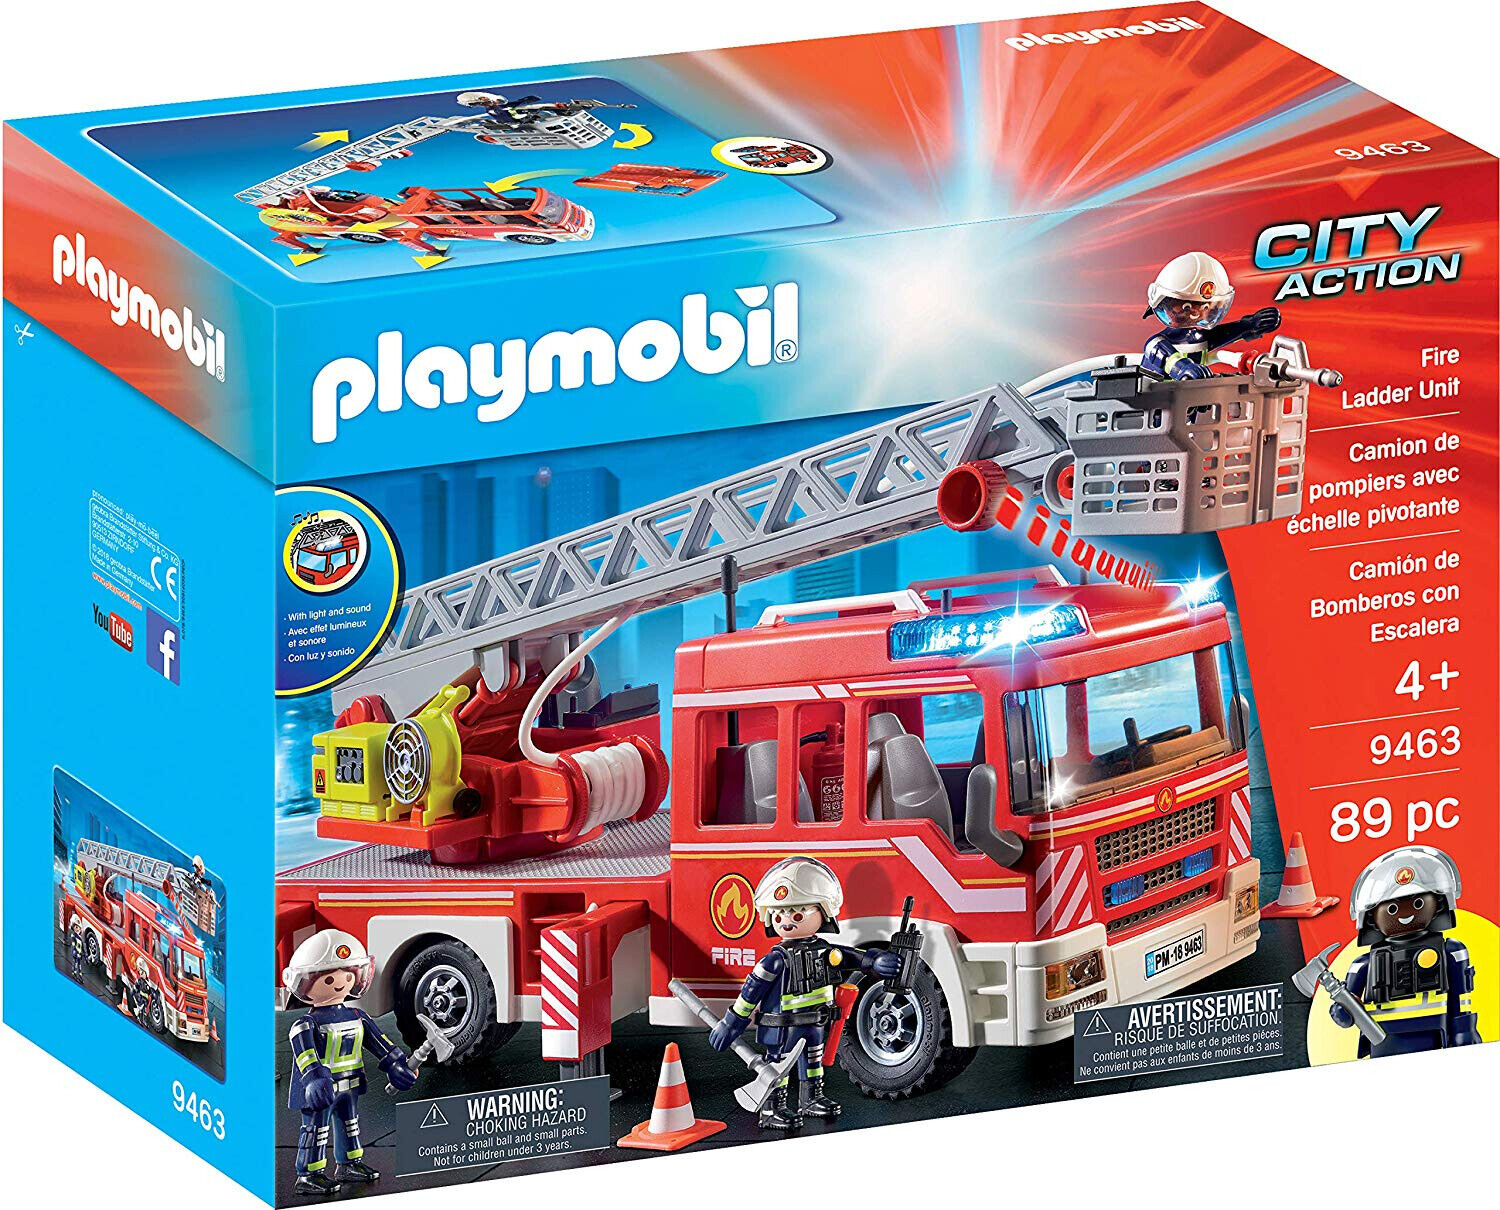 Playmobil City Action 9463 - Spielzeug-Feuerwehr-Leiterfahrzeug Feuerwehrauto